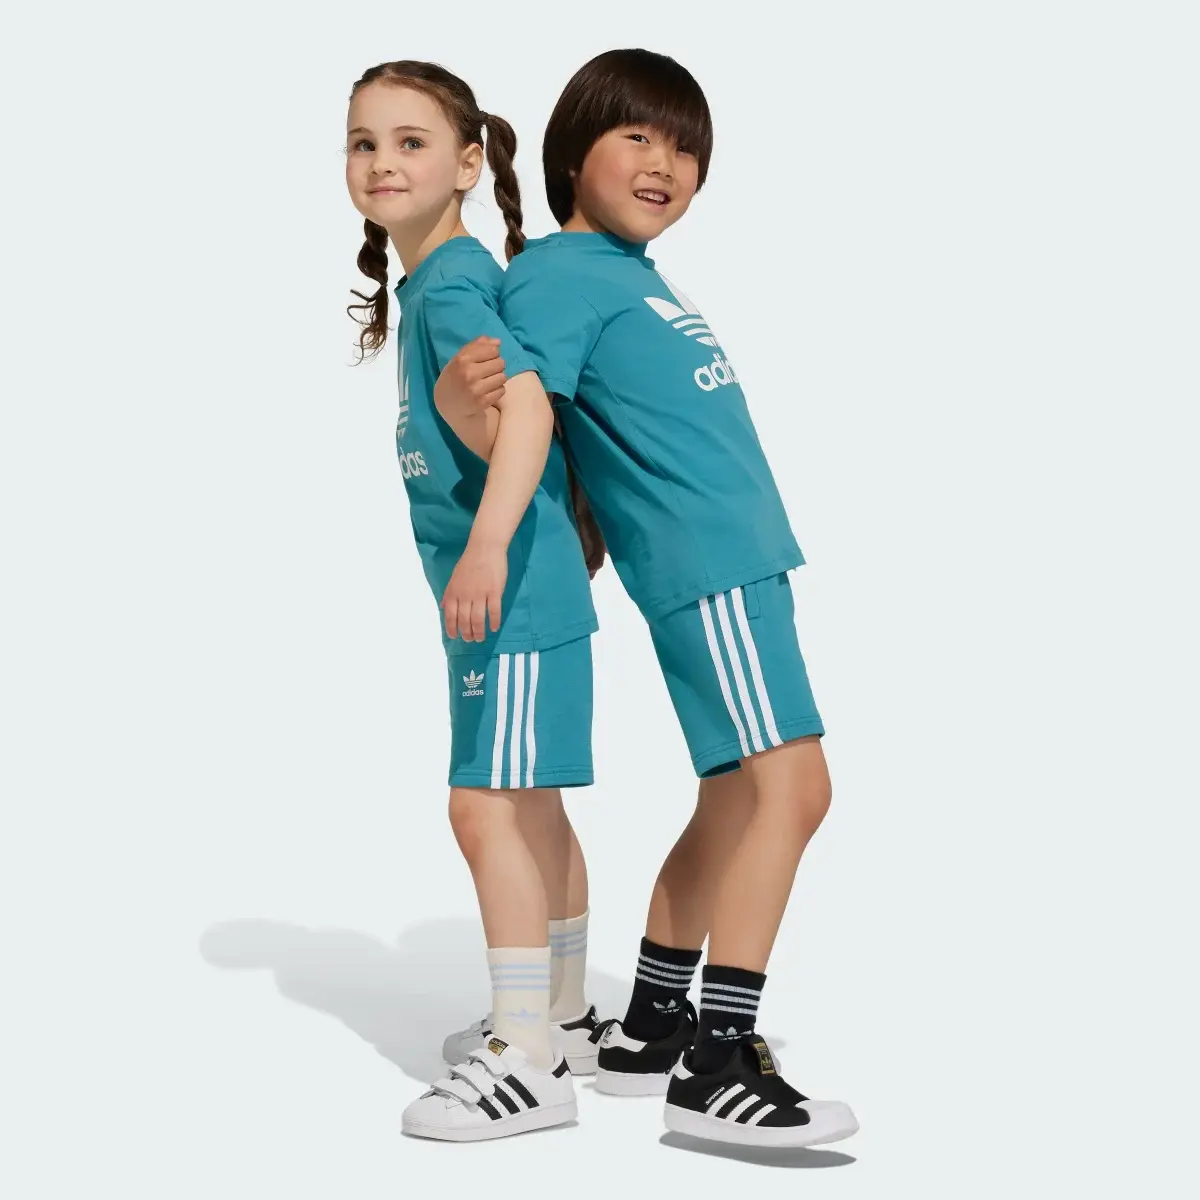 Adidas Adicolor Shorts and Tee Set. 1